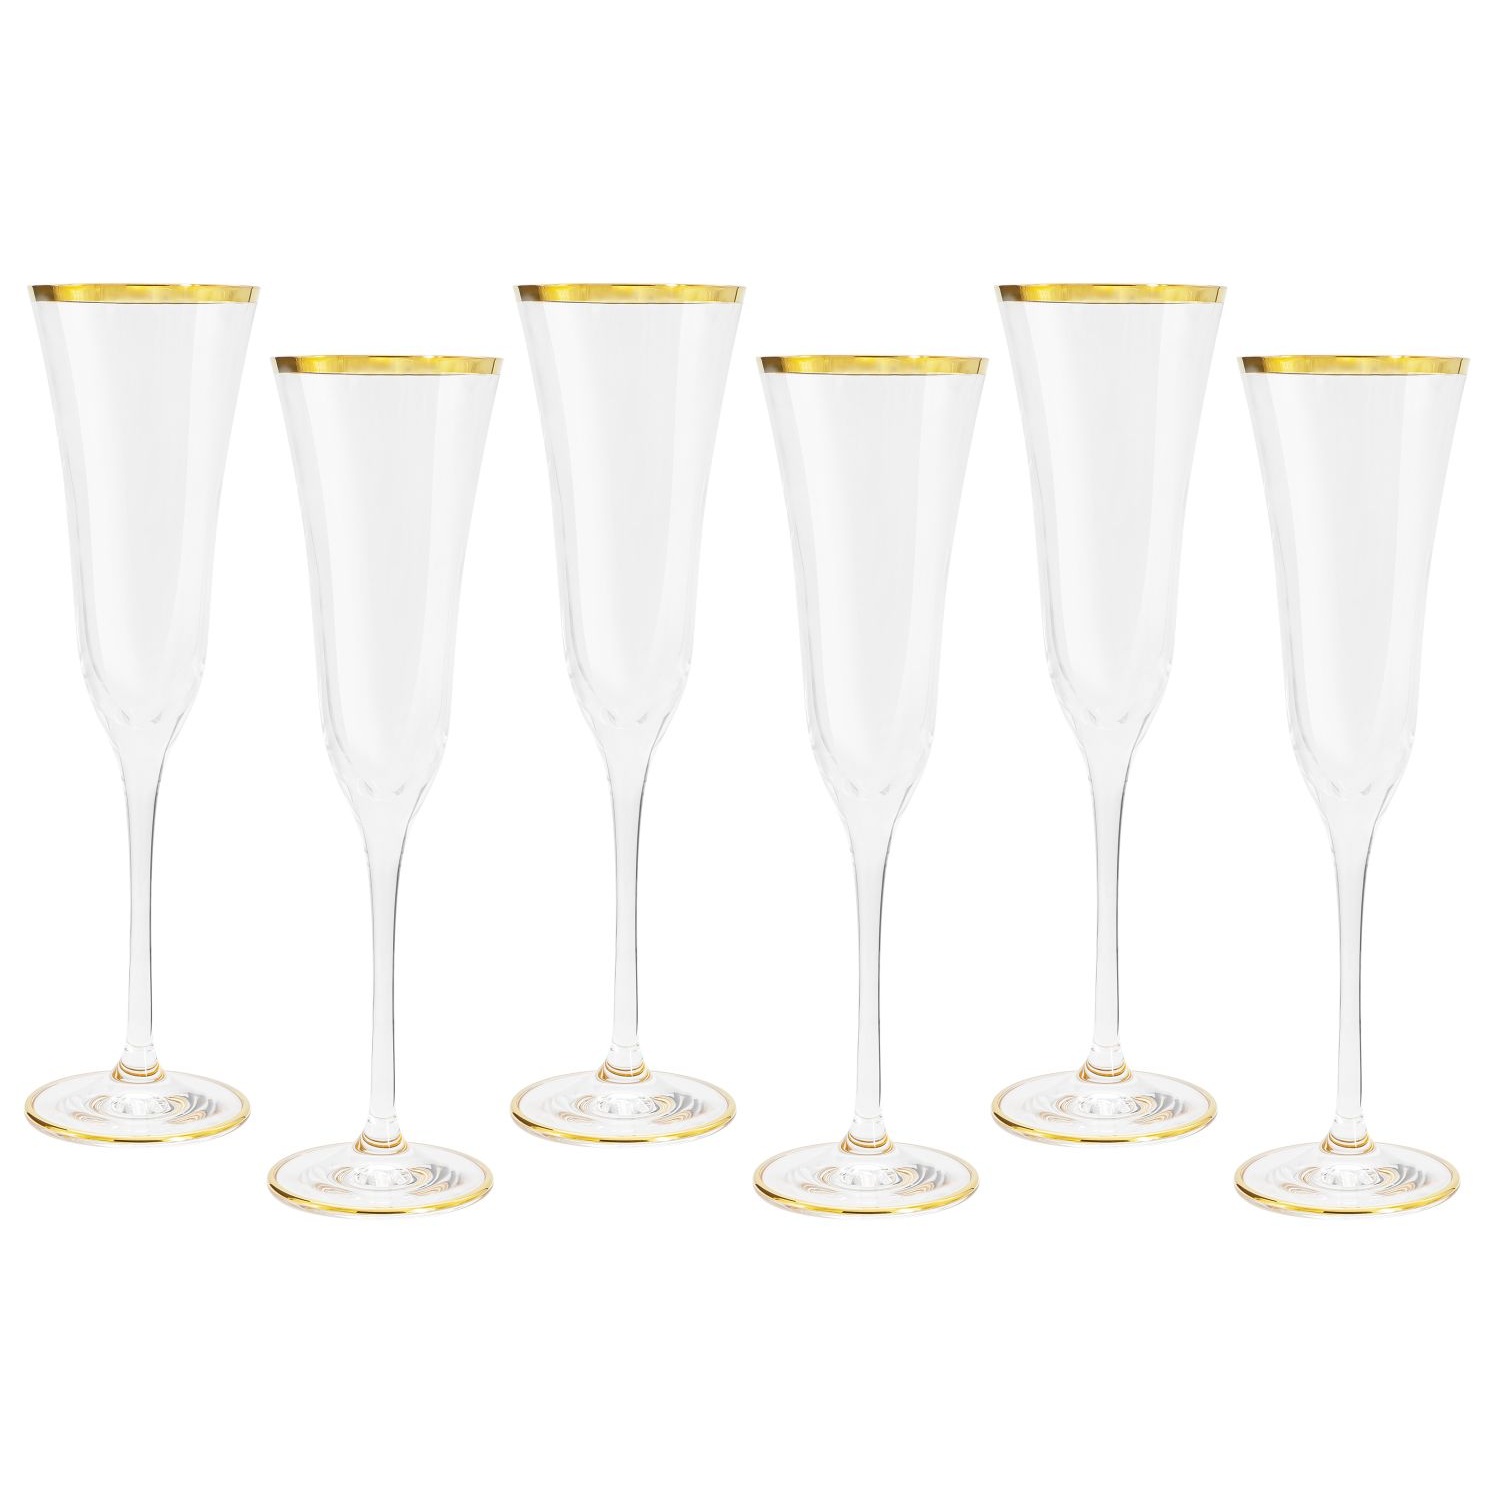 Набор бокалов для шампанского Same Сабина золото 6 шт набор стаканов для воды same сабина золото 6 шт